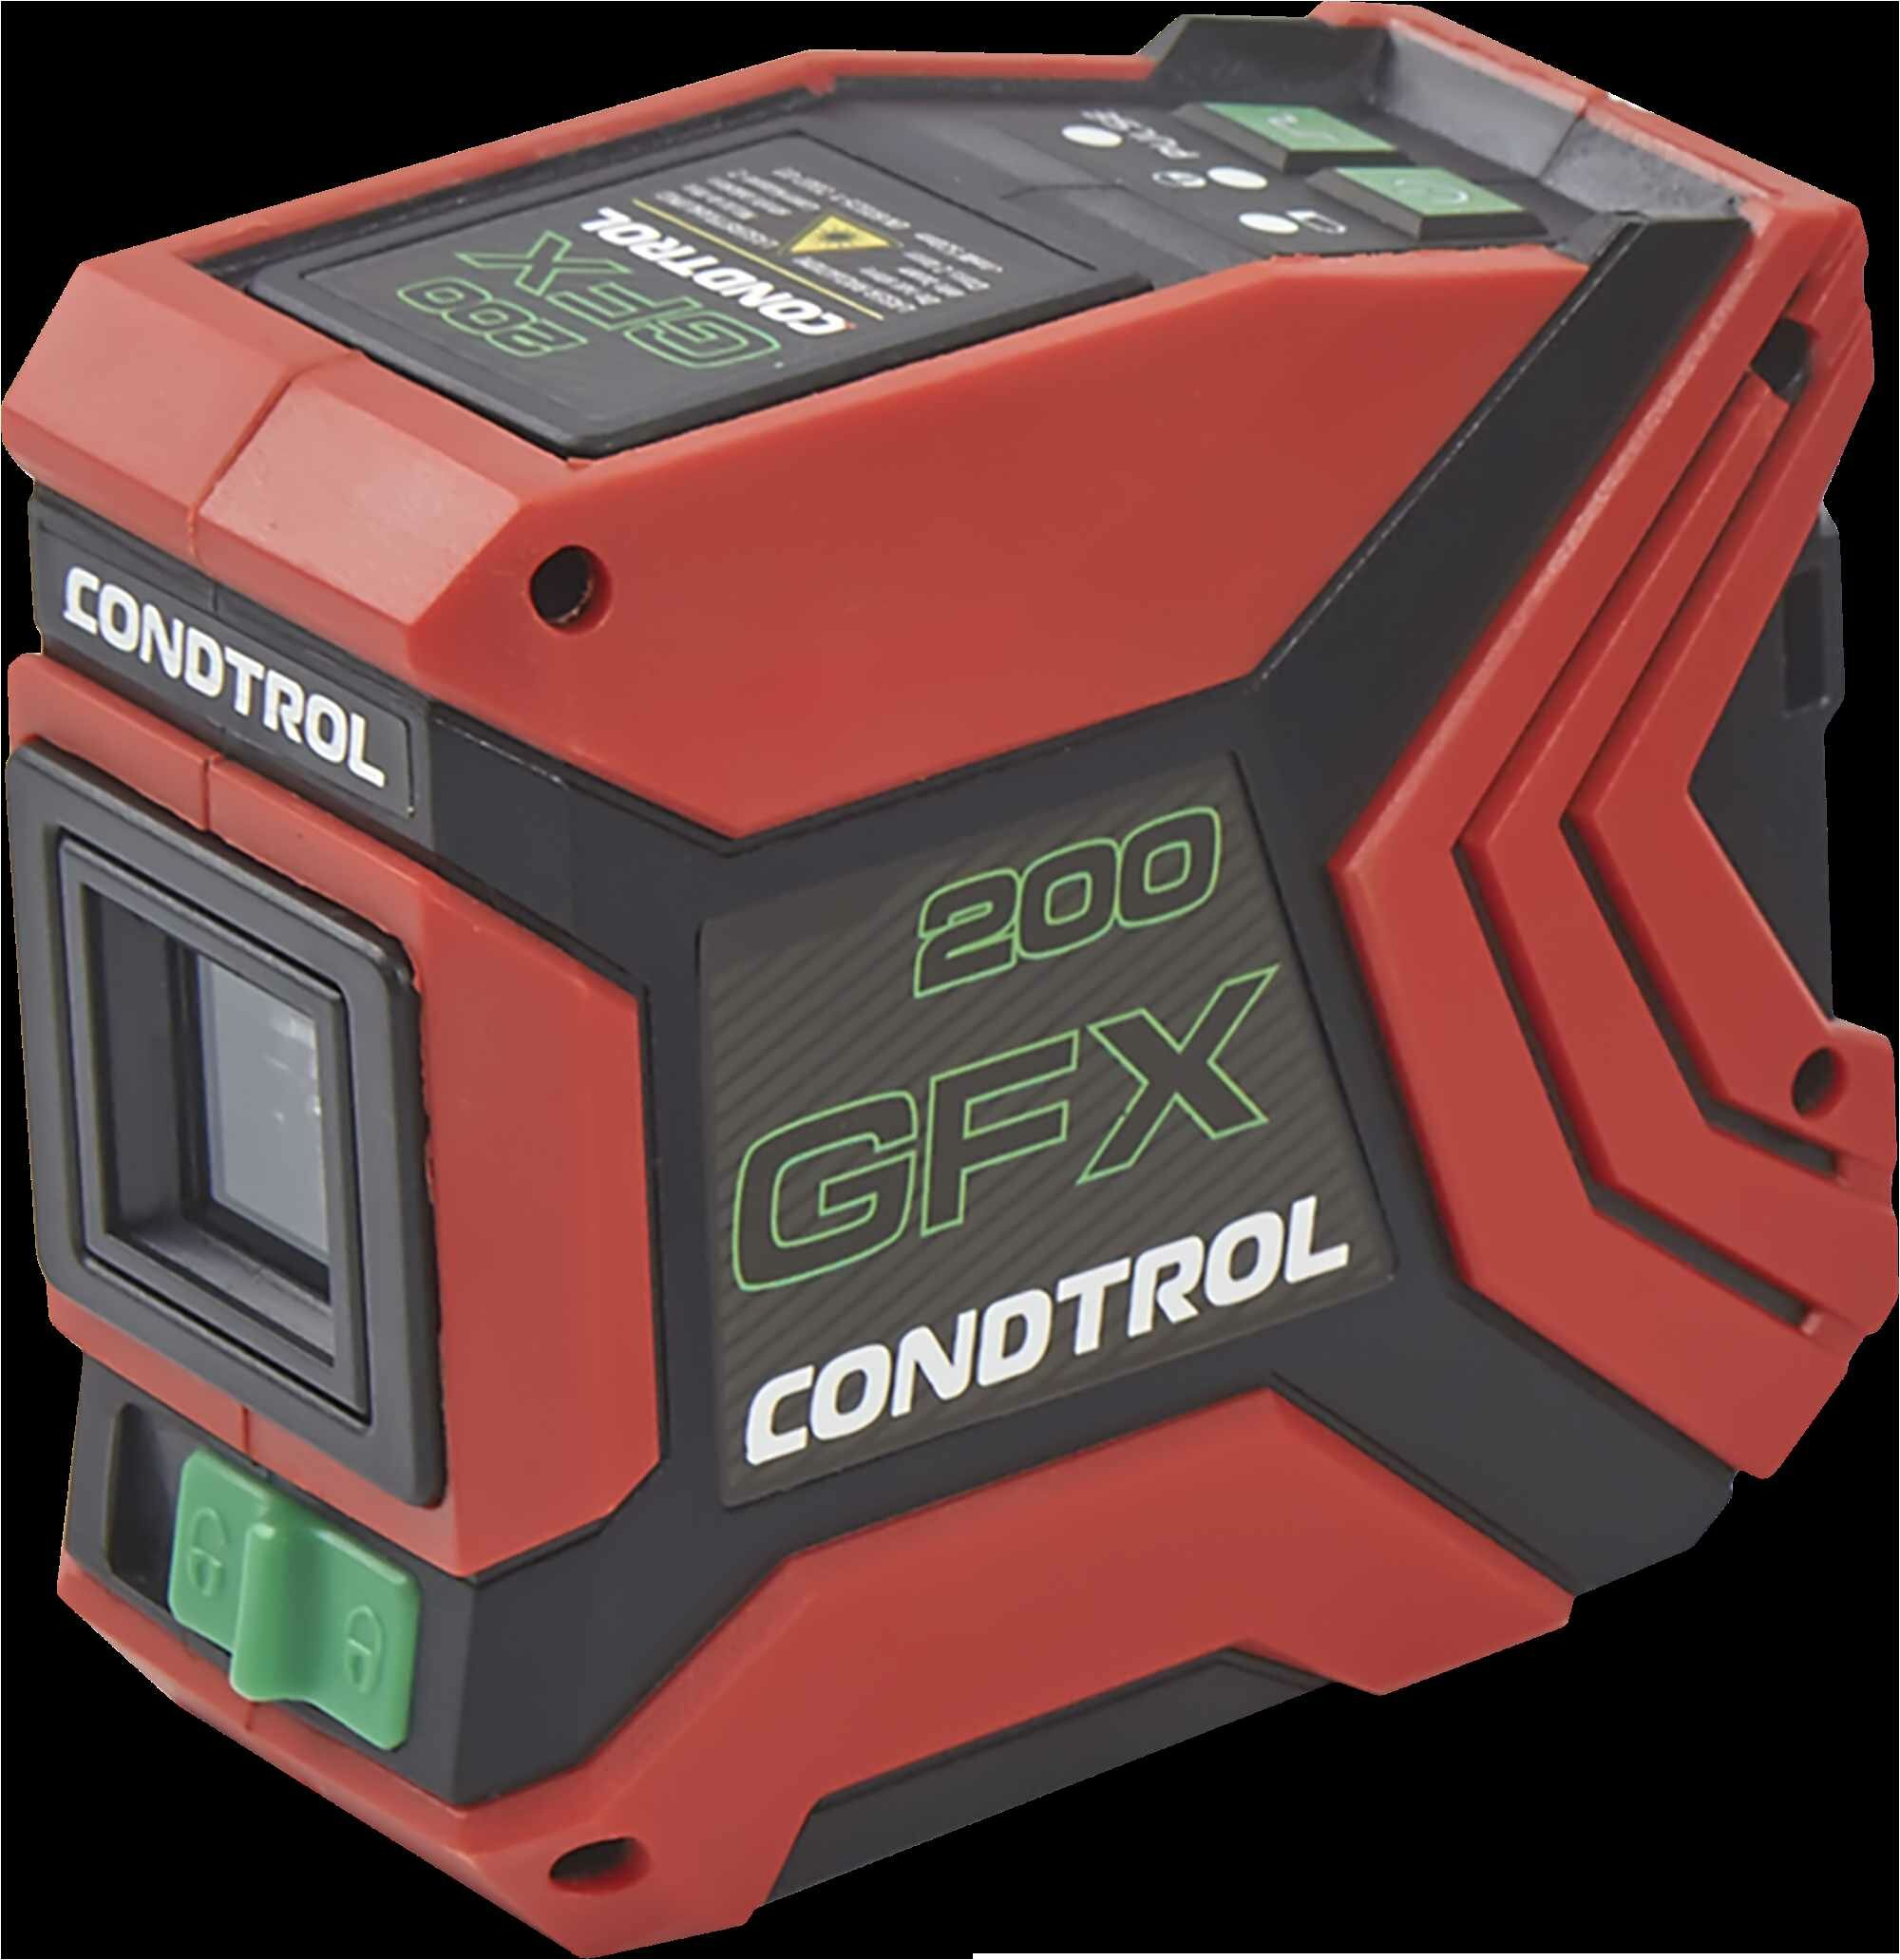 Уровень лазерный Condtrol GFX200 зеленый луч, 20 м